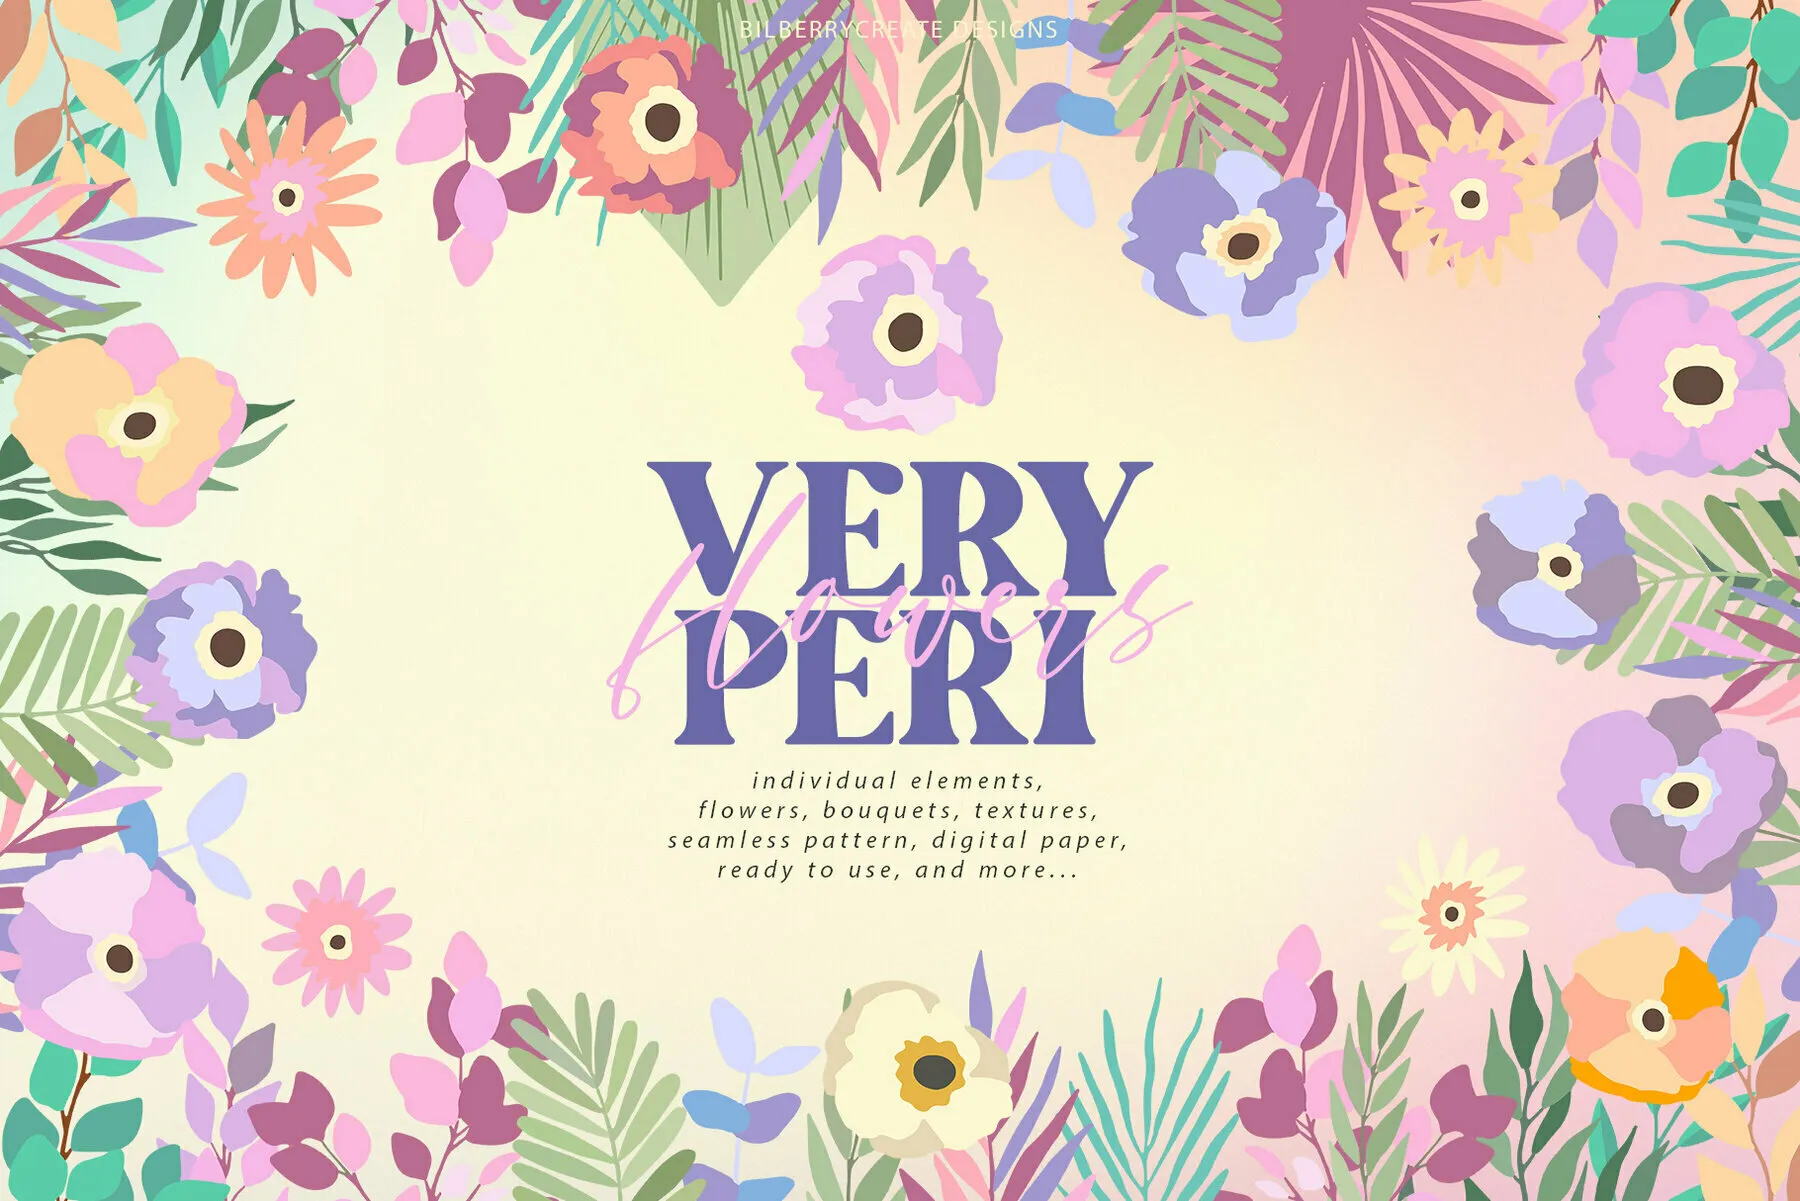 Very Peri Flowers